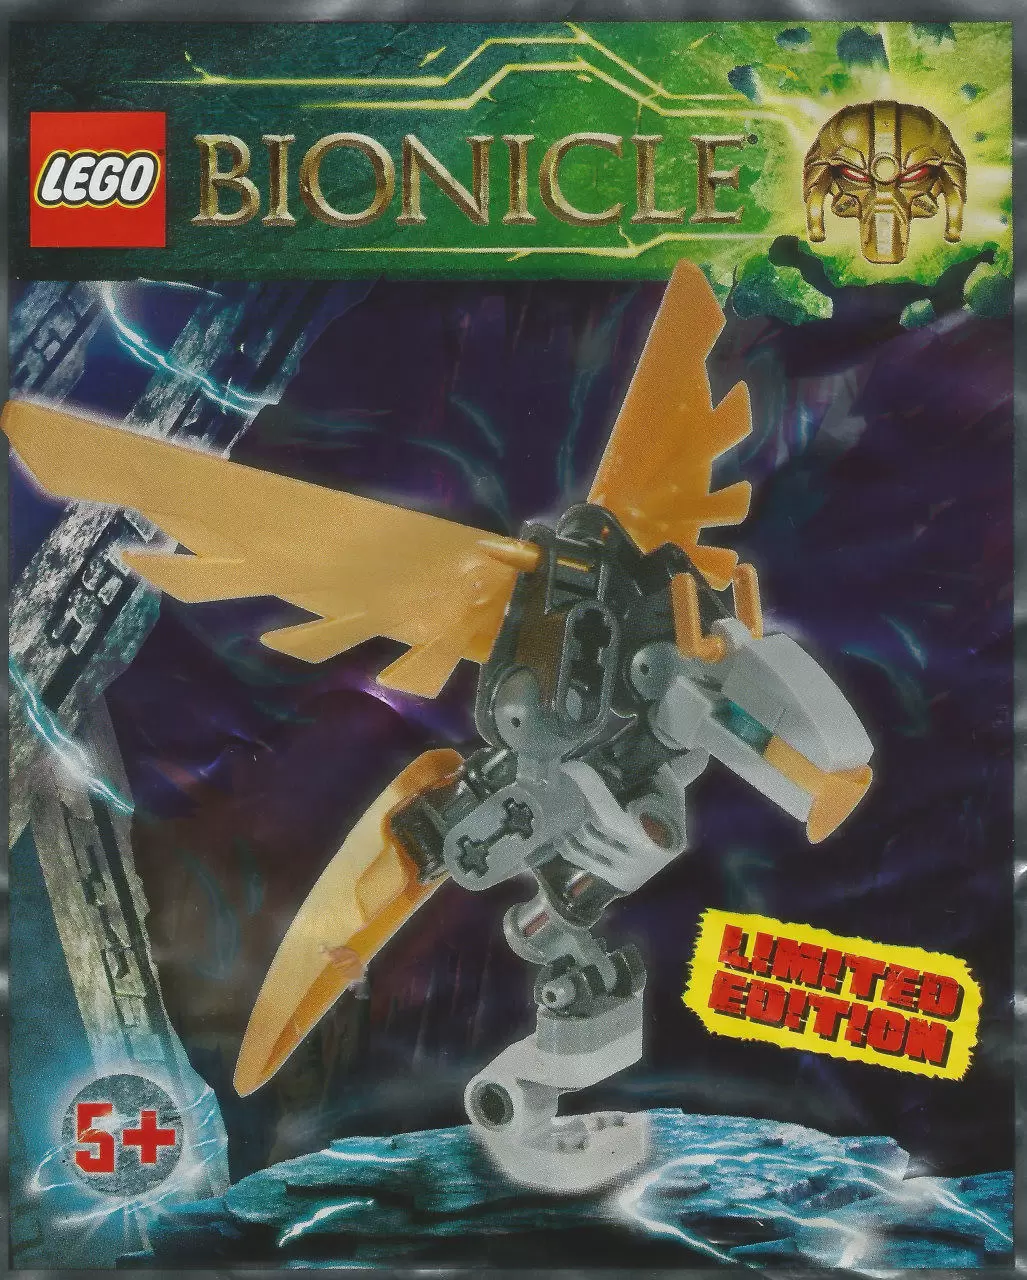 LEGO Bionicle - Ekimu Falcon